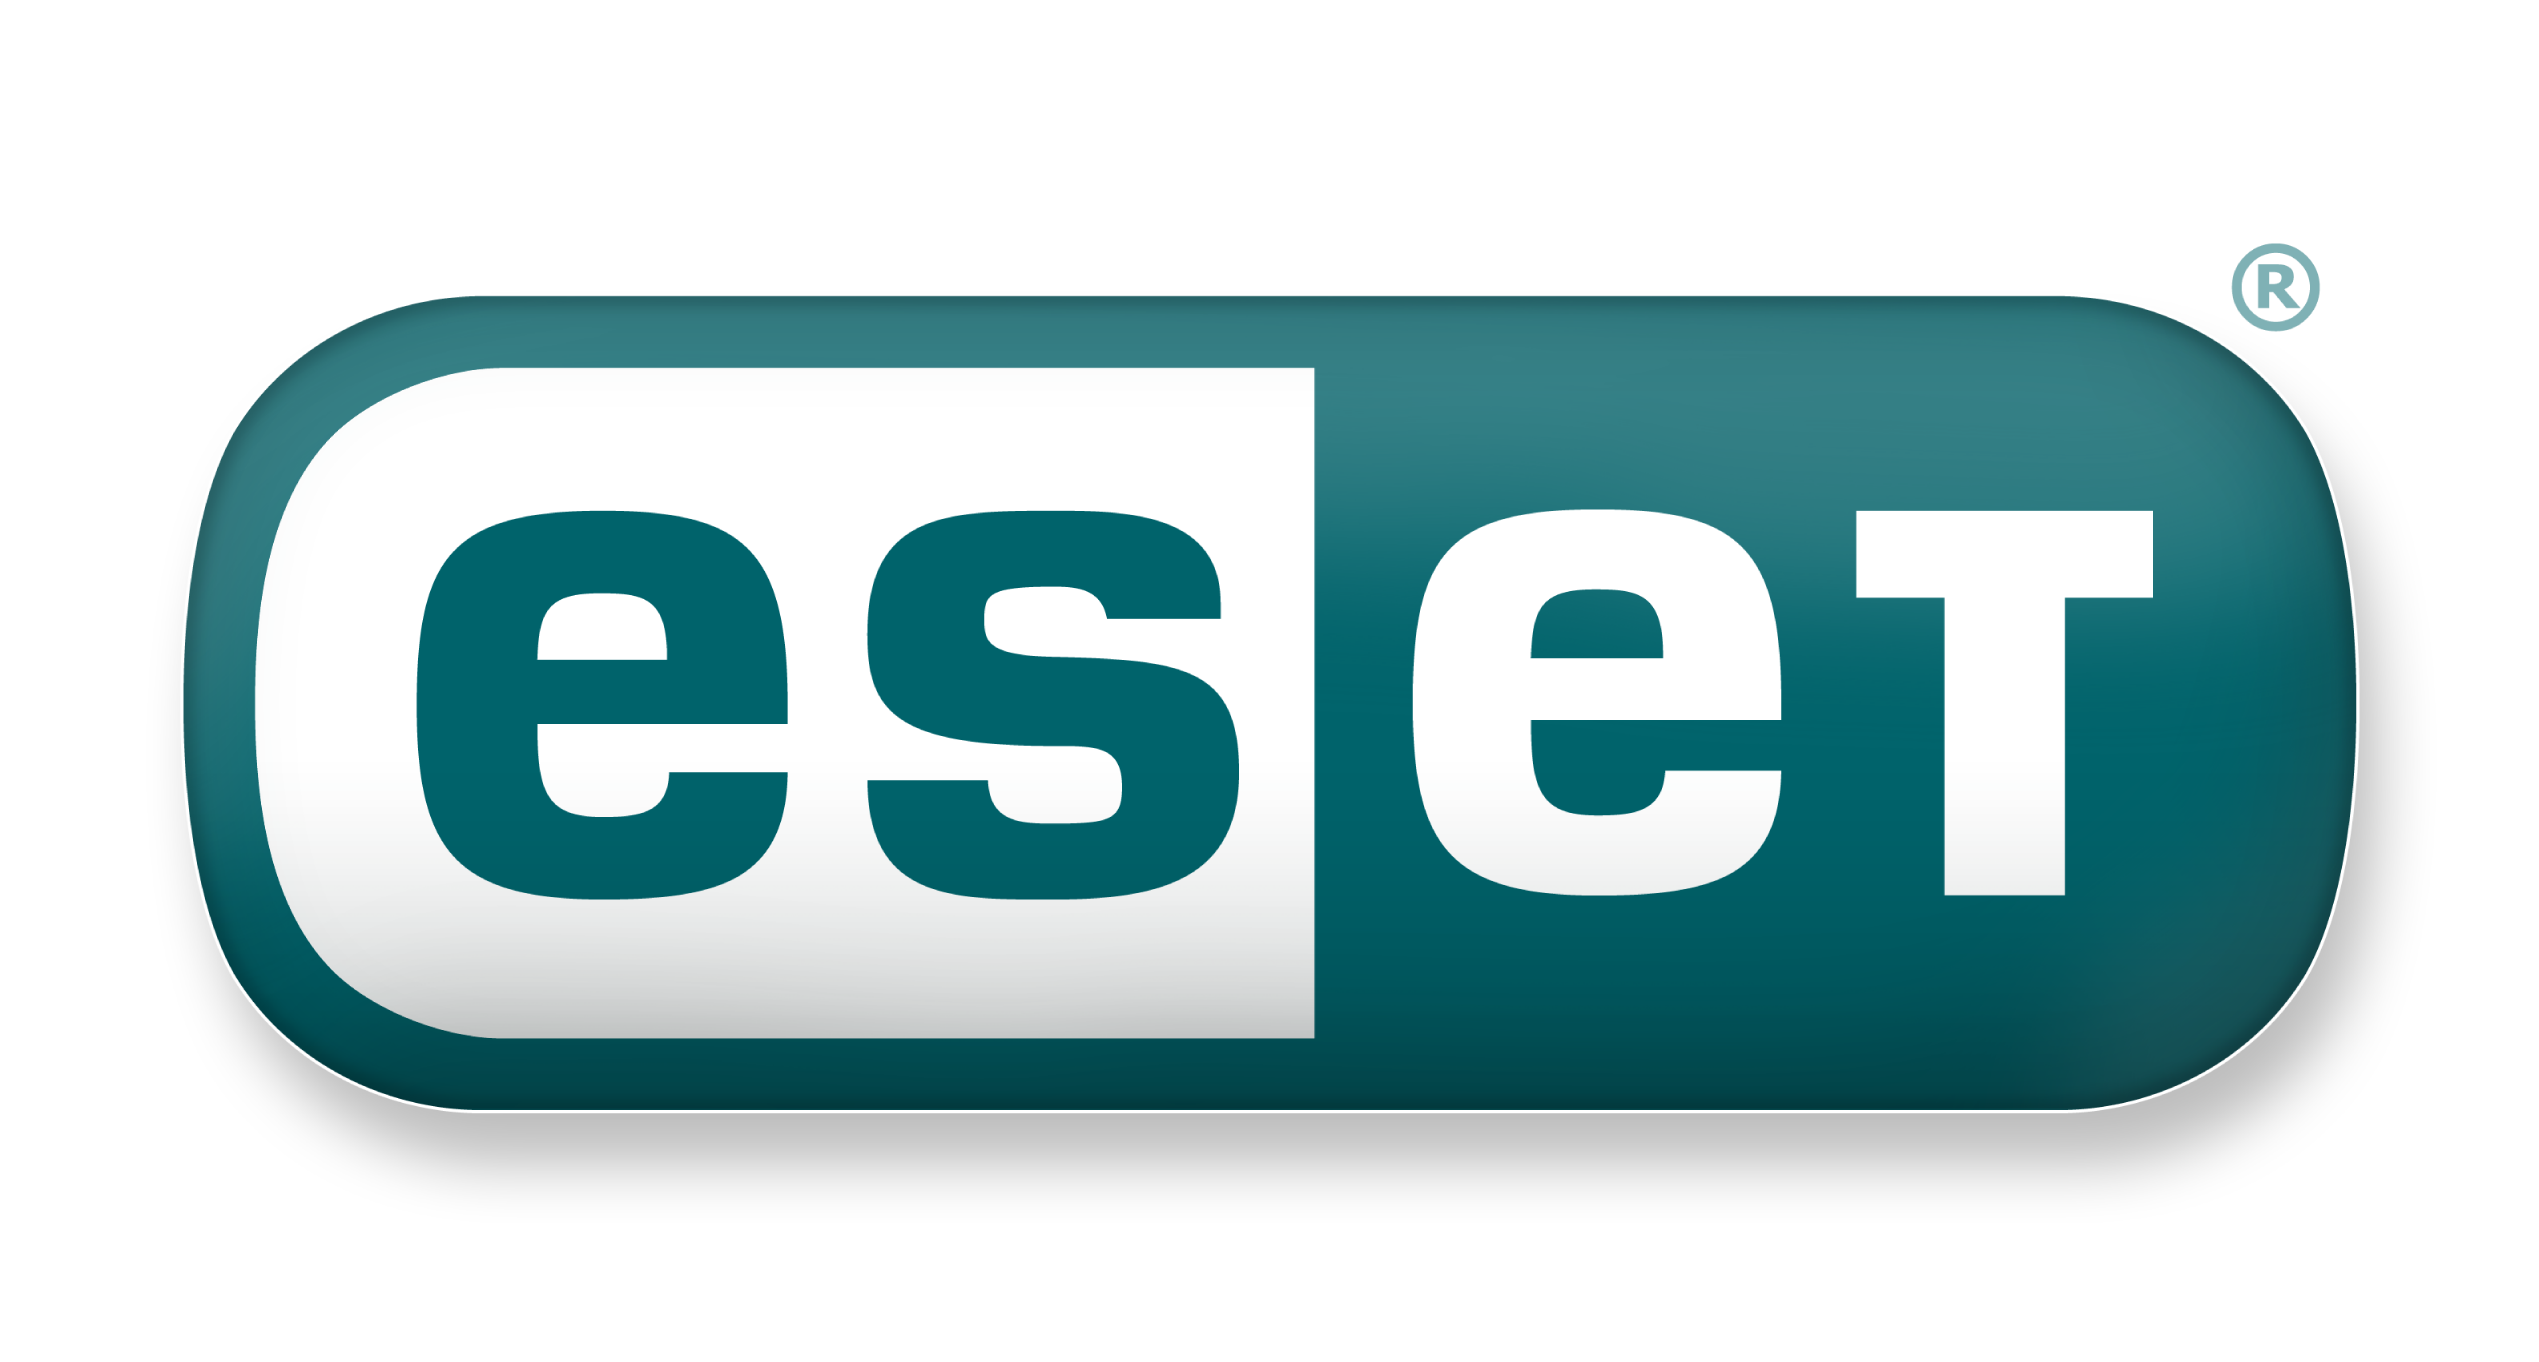 myce-eset-logo